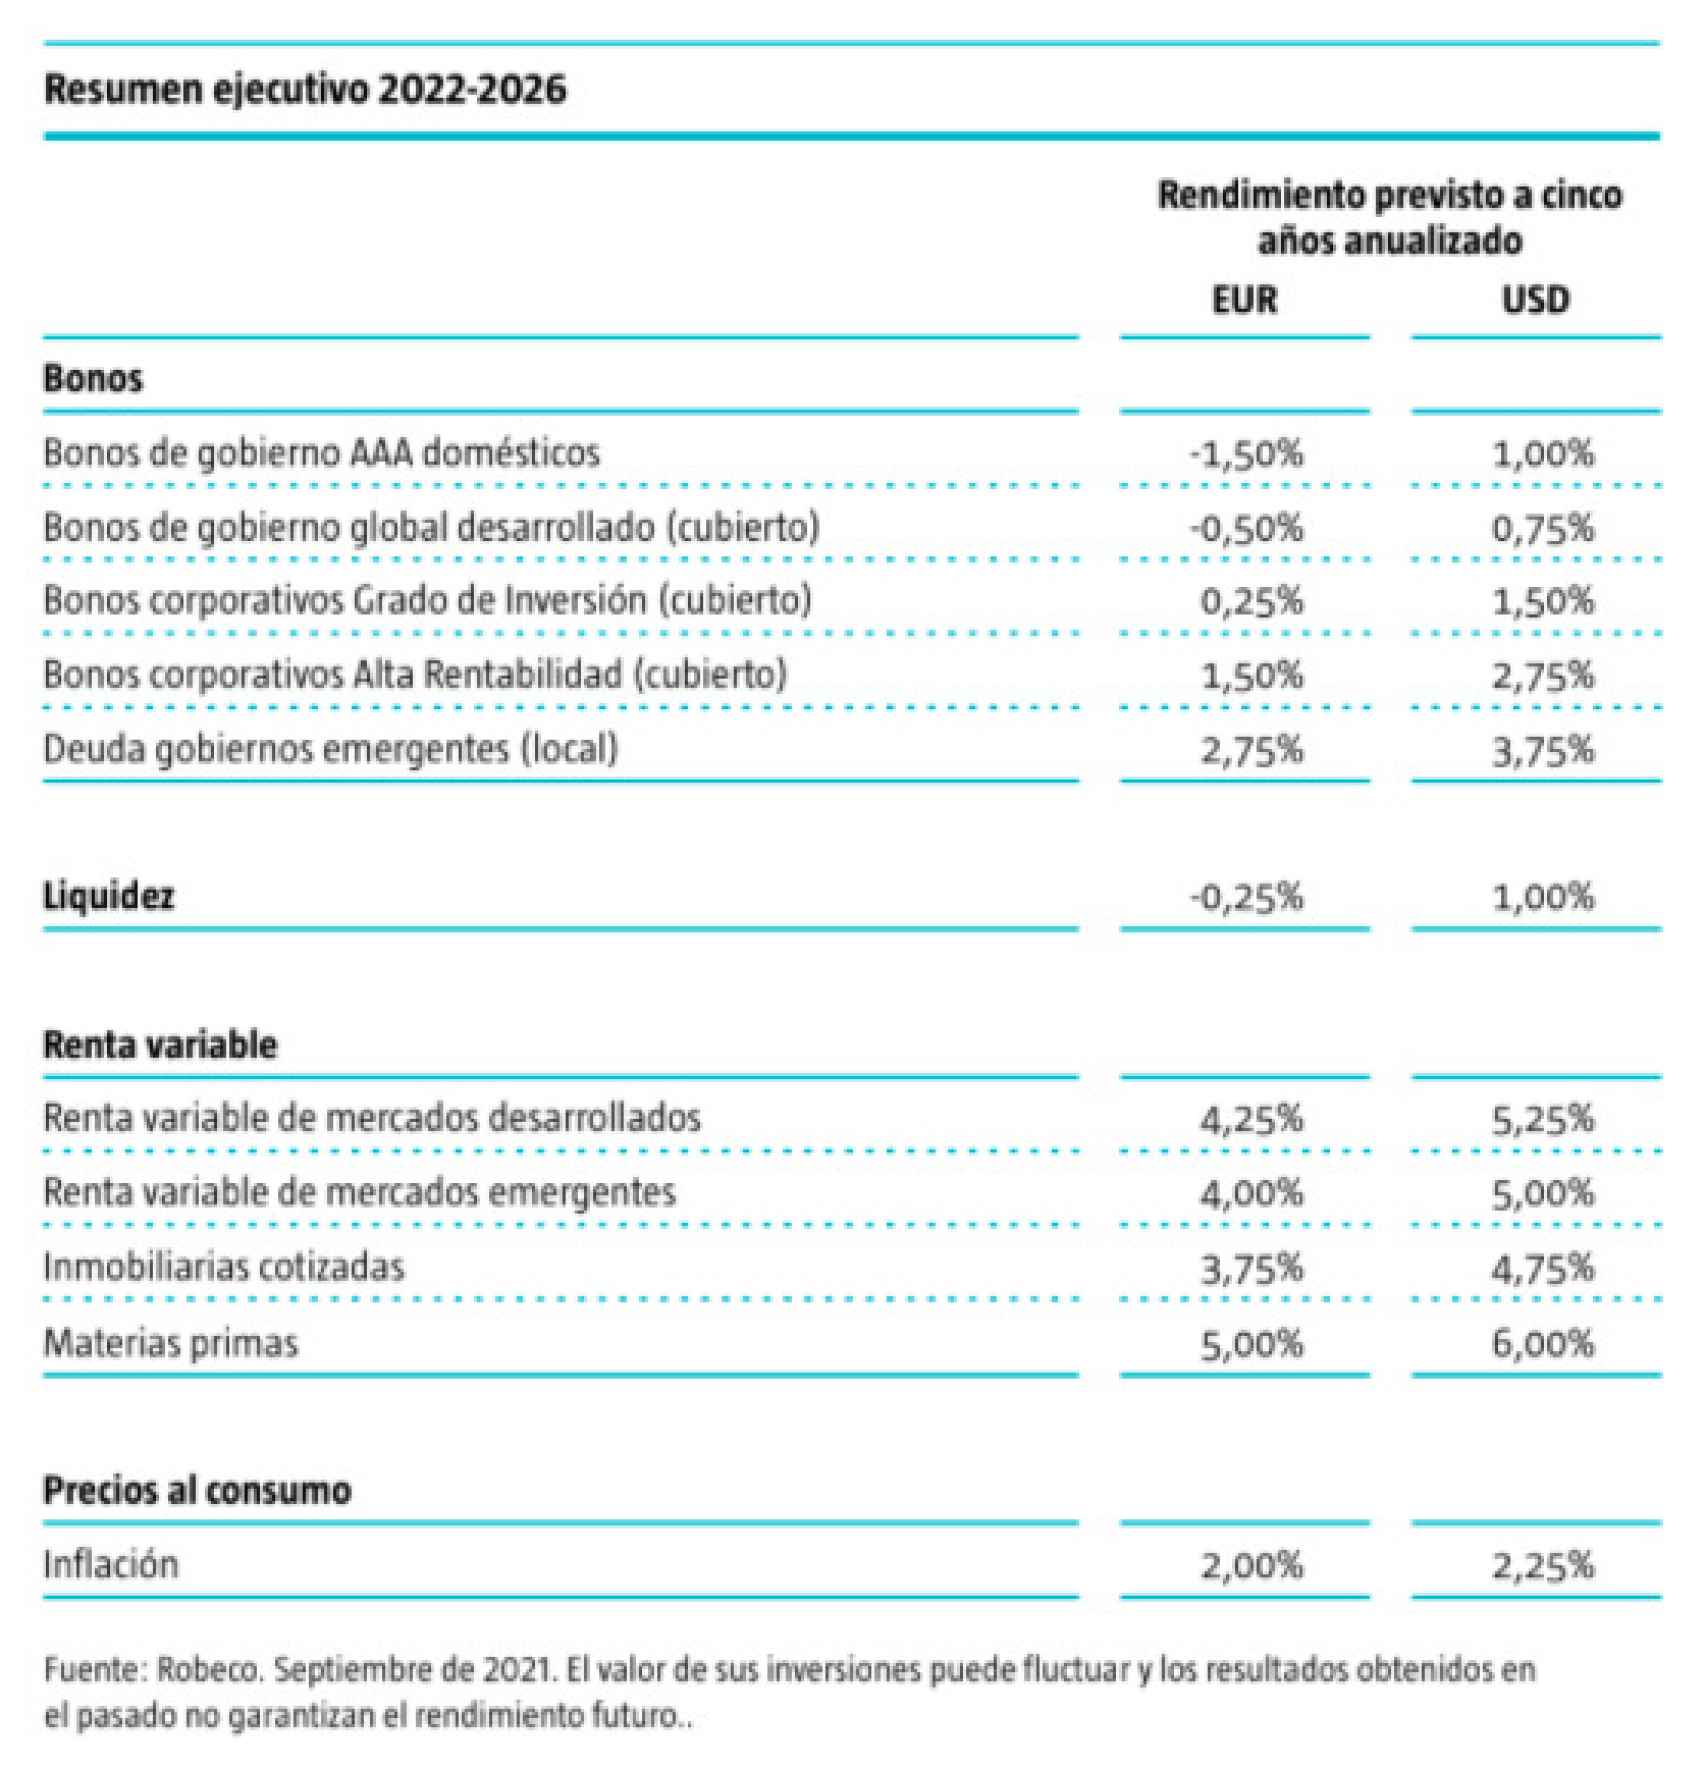 Proyección de rentabilidad de los activos 2022-2026.